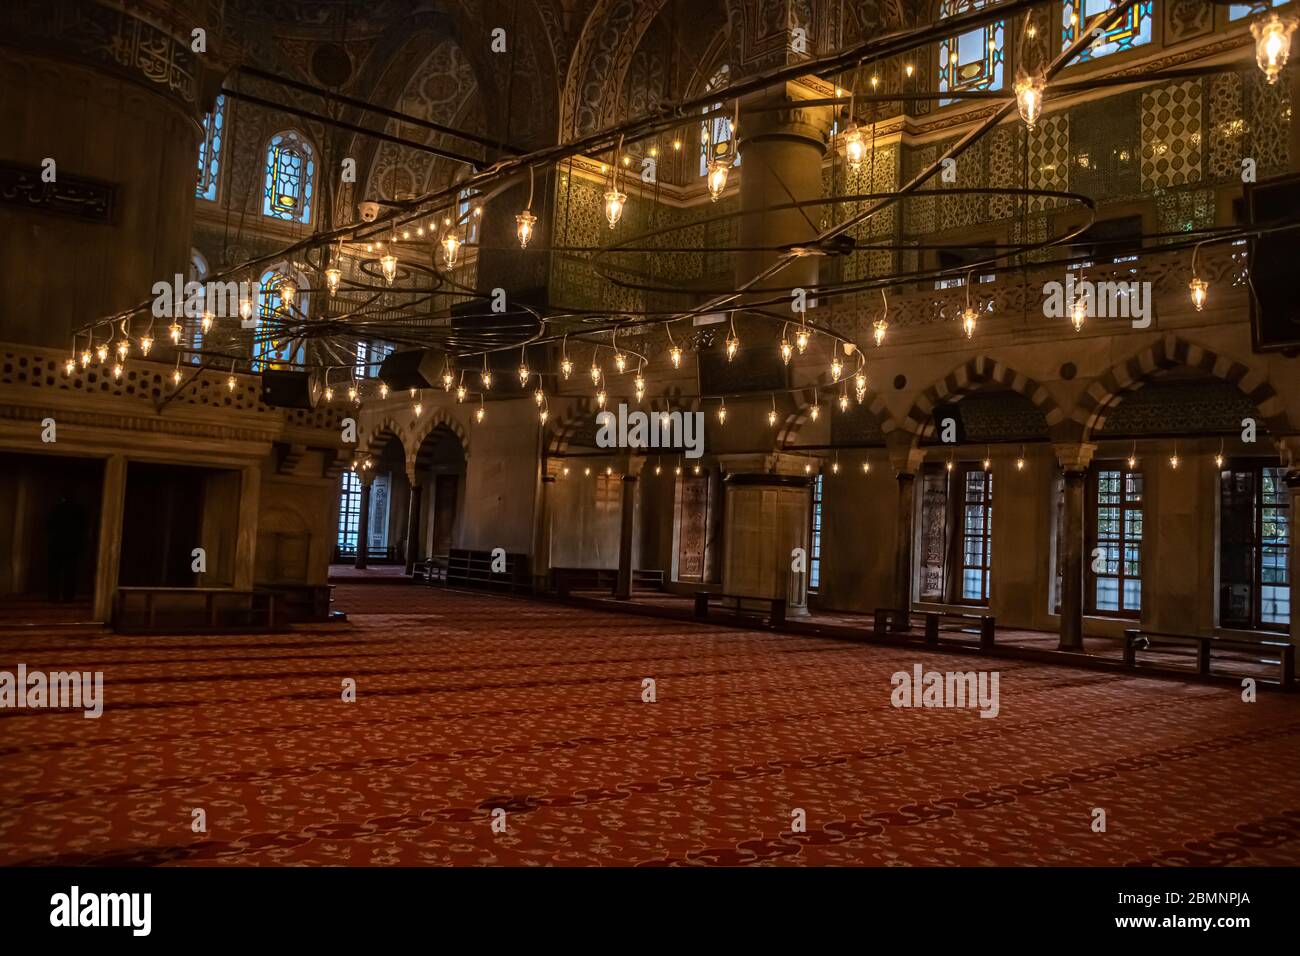 Innenraum der Blauen Moschee, Estambul Stockfoto